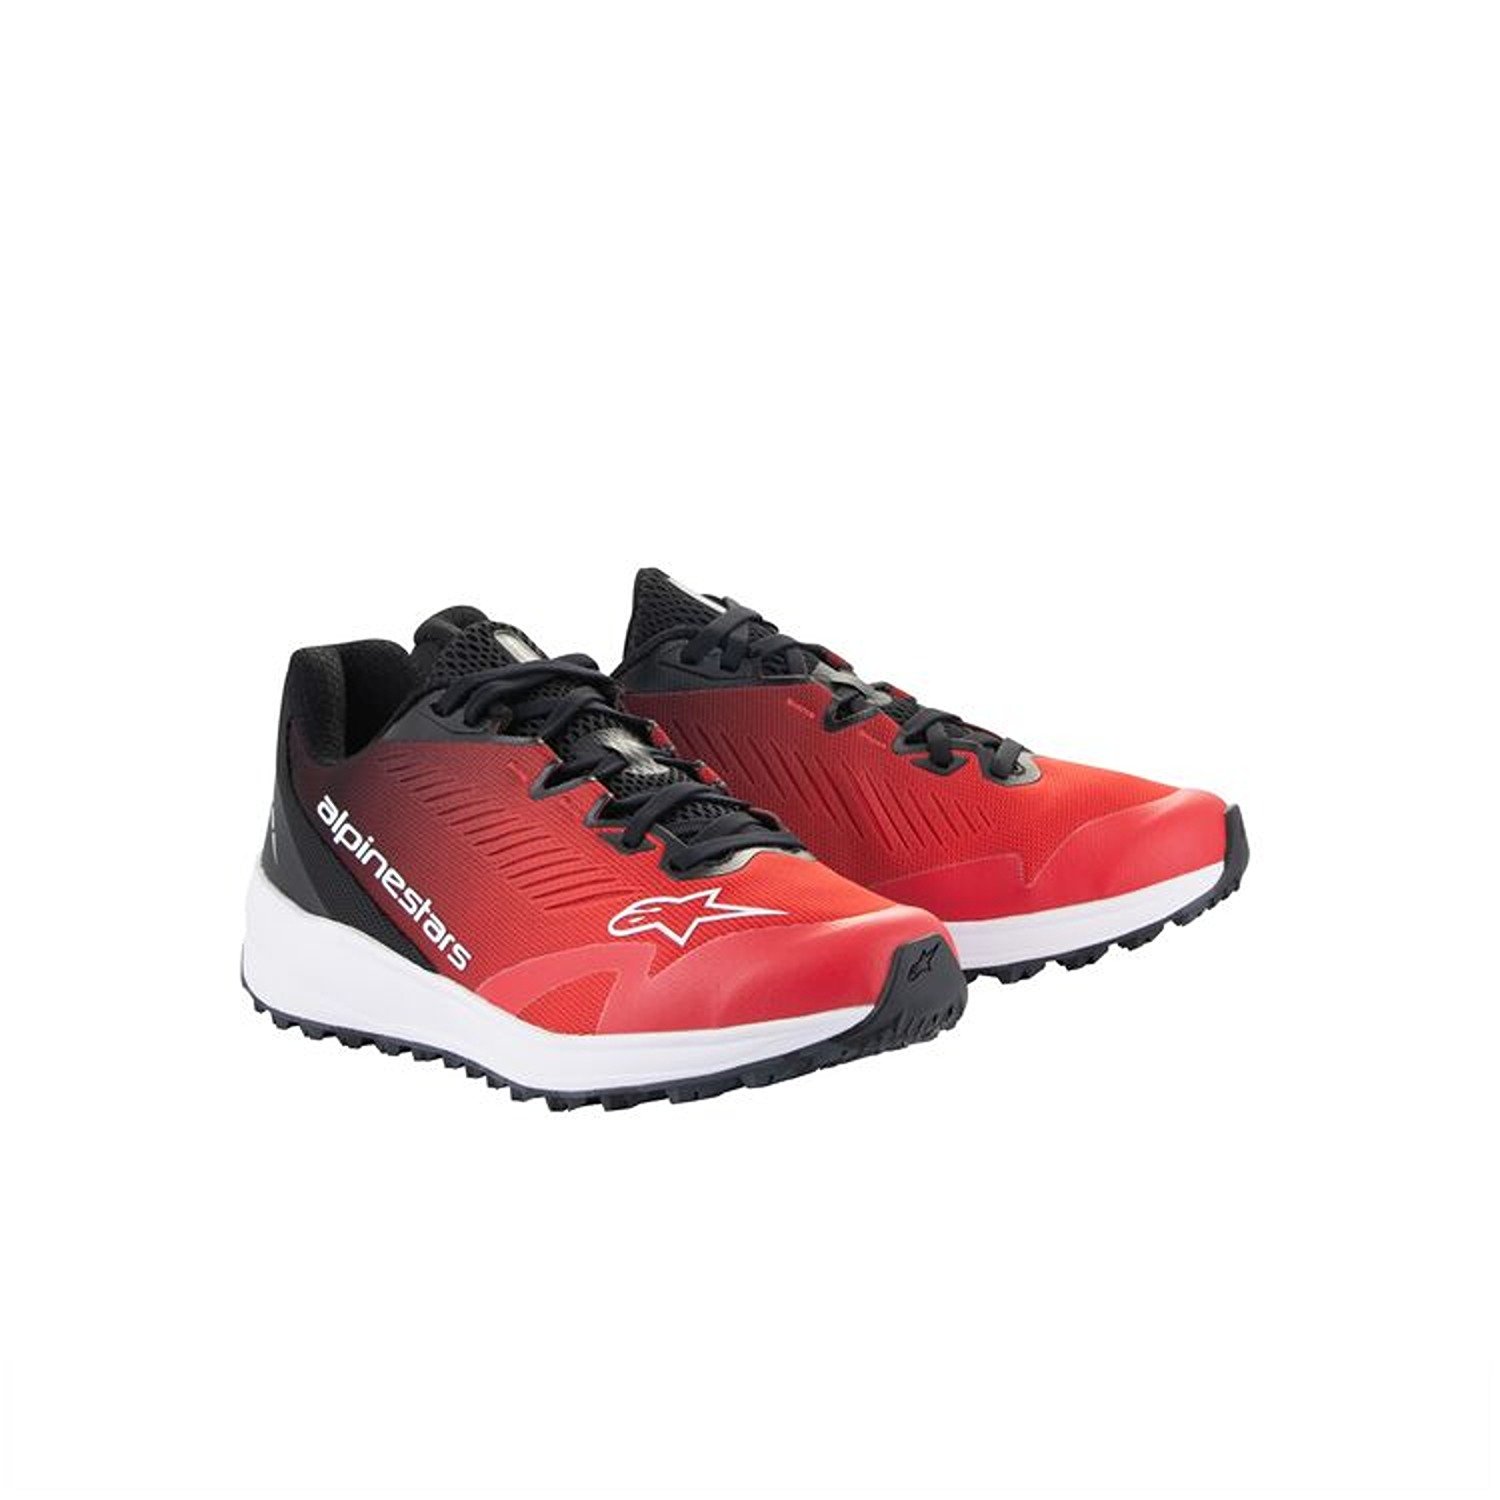 Image of Alpinestars Meta Road V2 Shoes Red Black White Größe US 5